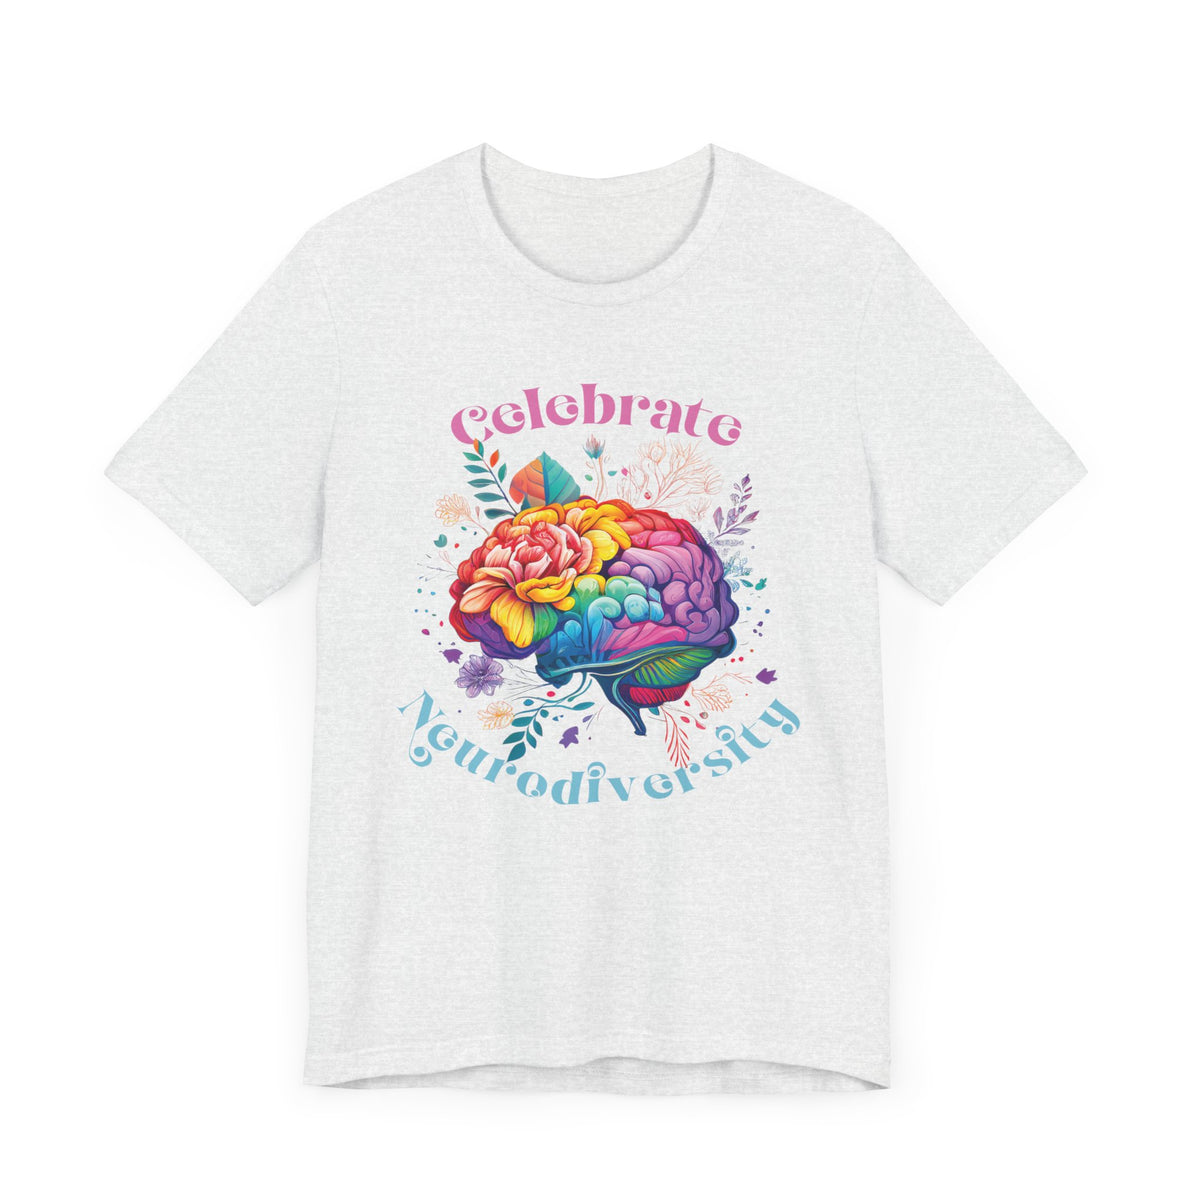 Celebrate Neurodiversity Shirt | Autism Shirt | Autism Awareness Shirt | Inclusion Shirt | Brain Art | Super Soft Unisex Jersey T-shirt